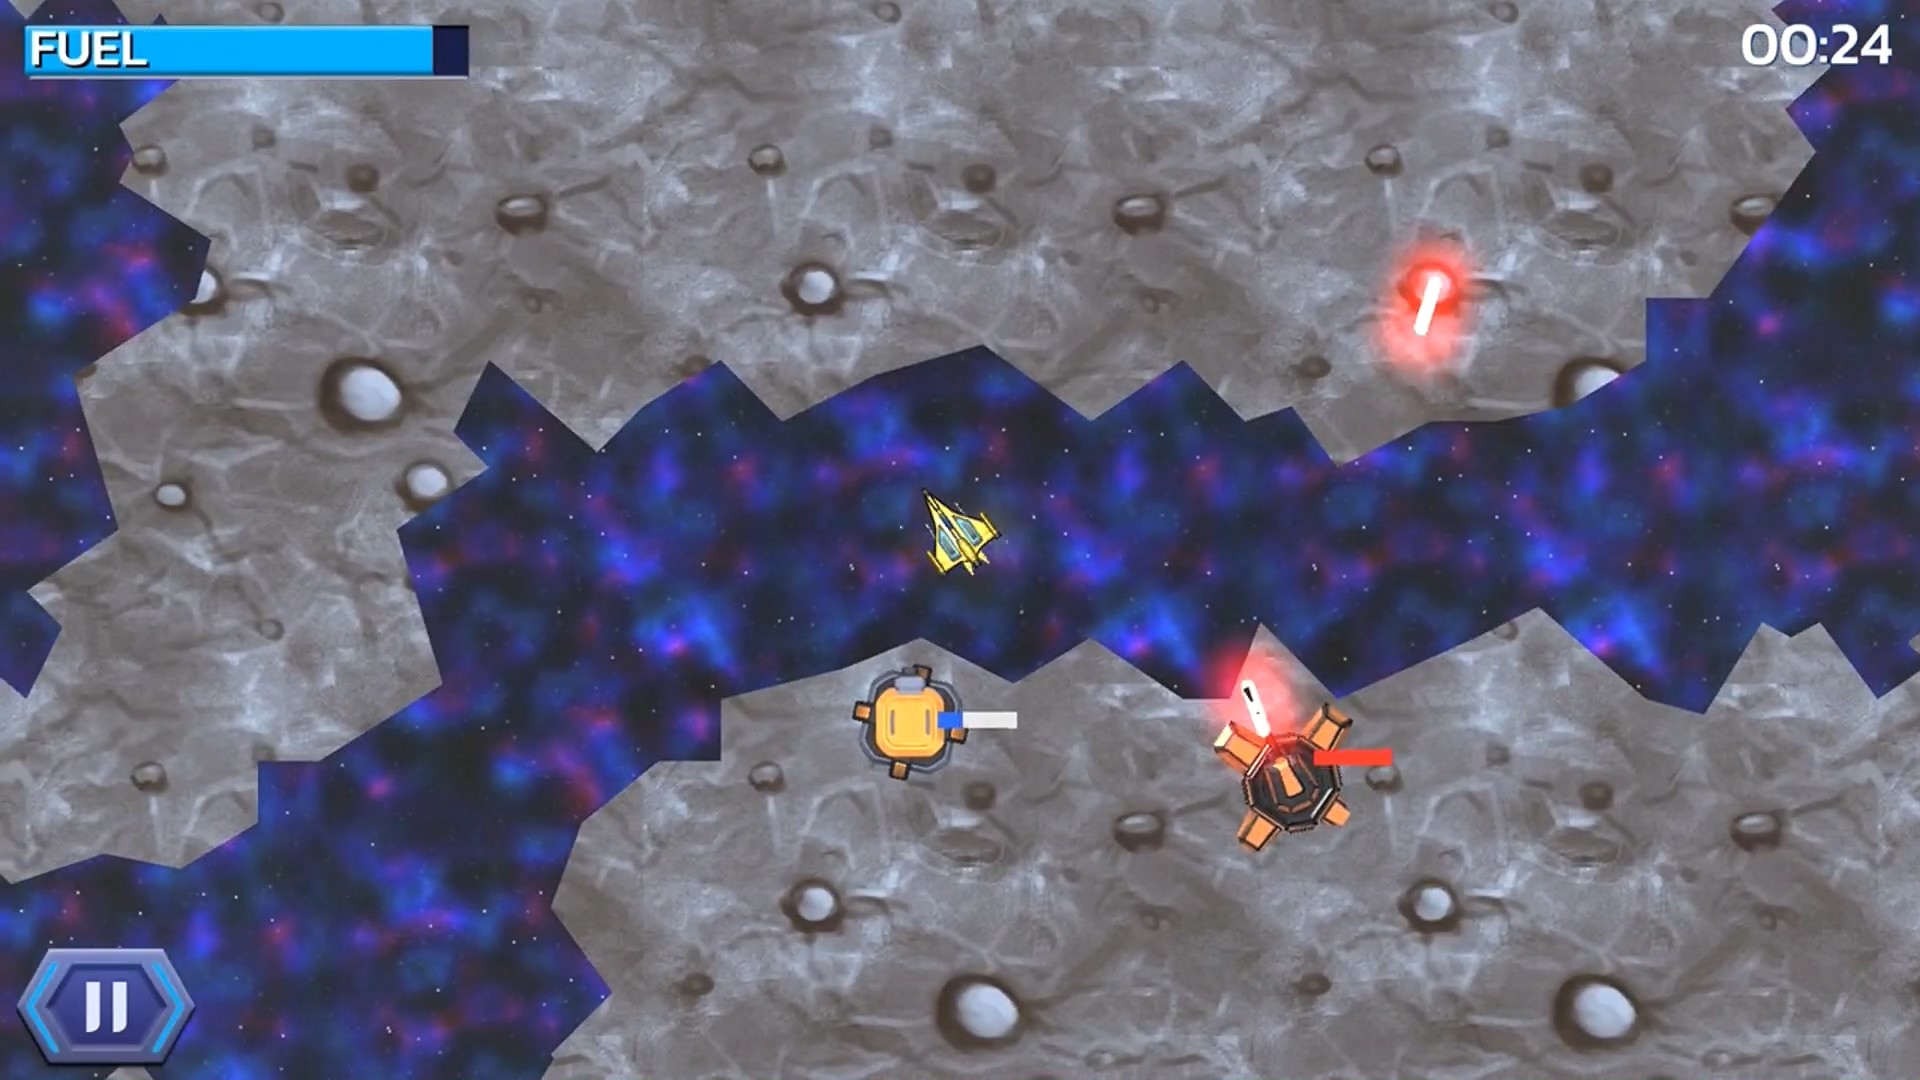 Planet Lander screenshot